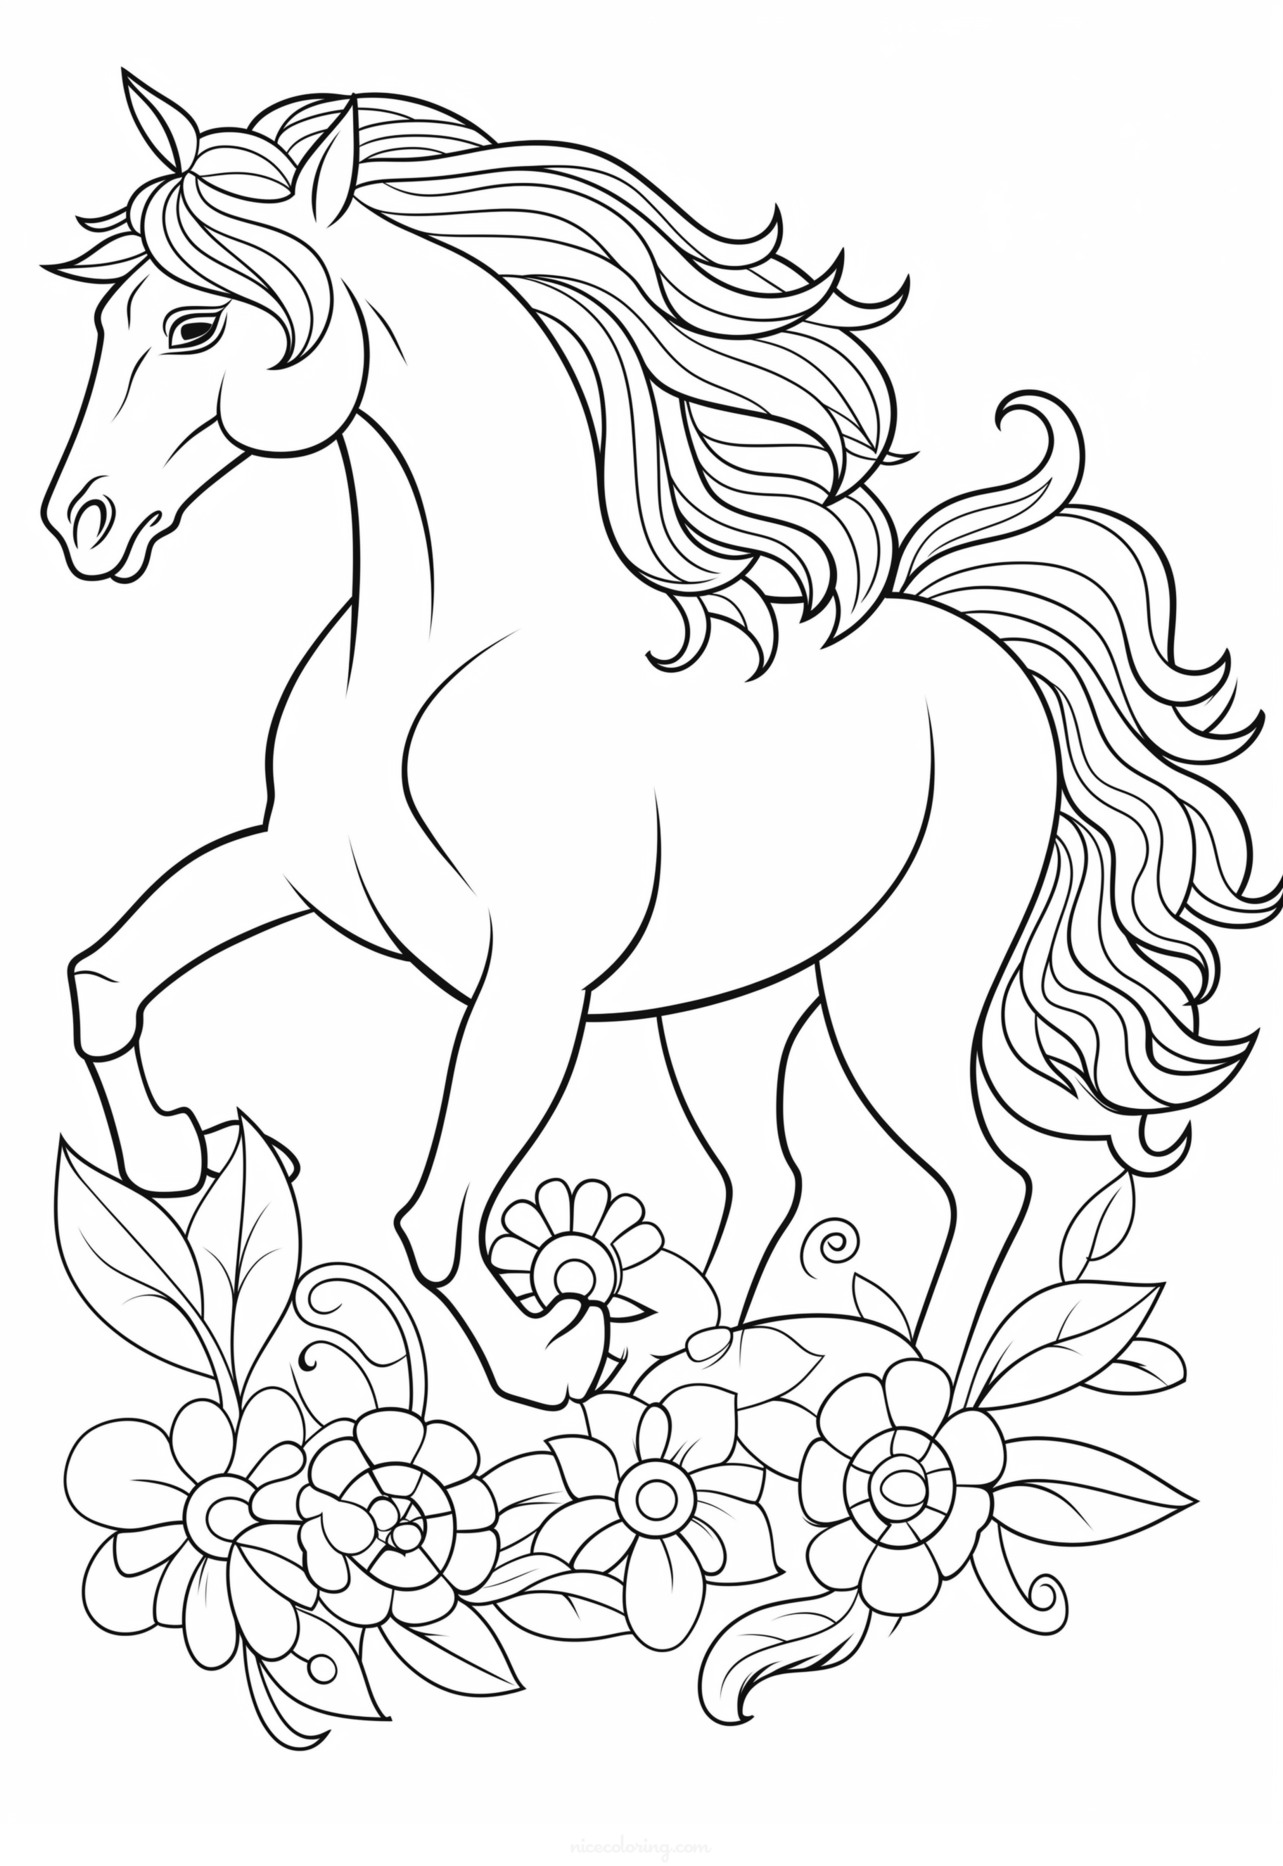 Раскраска изображения бегущей лошади